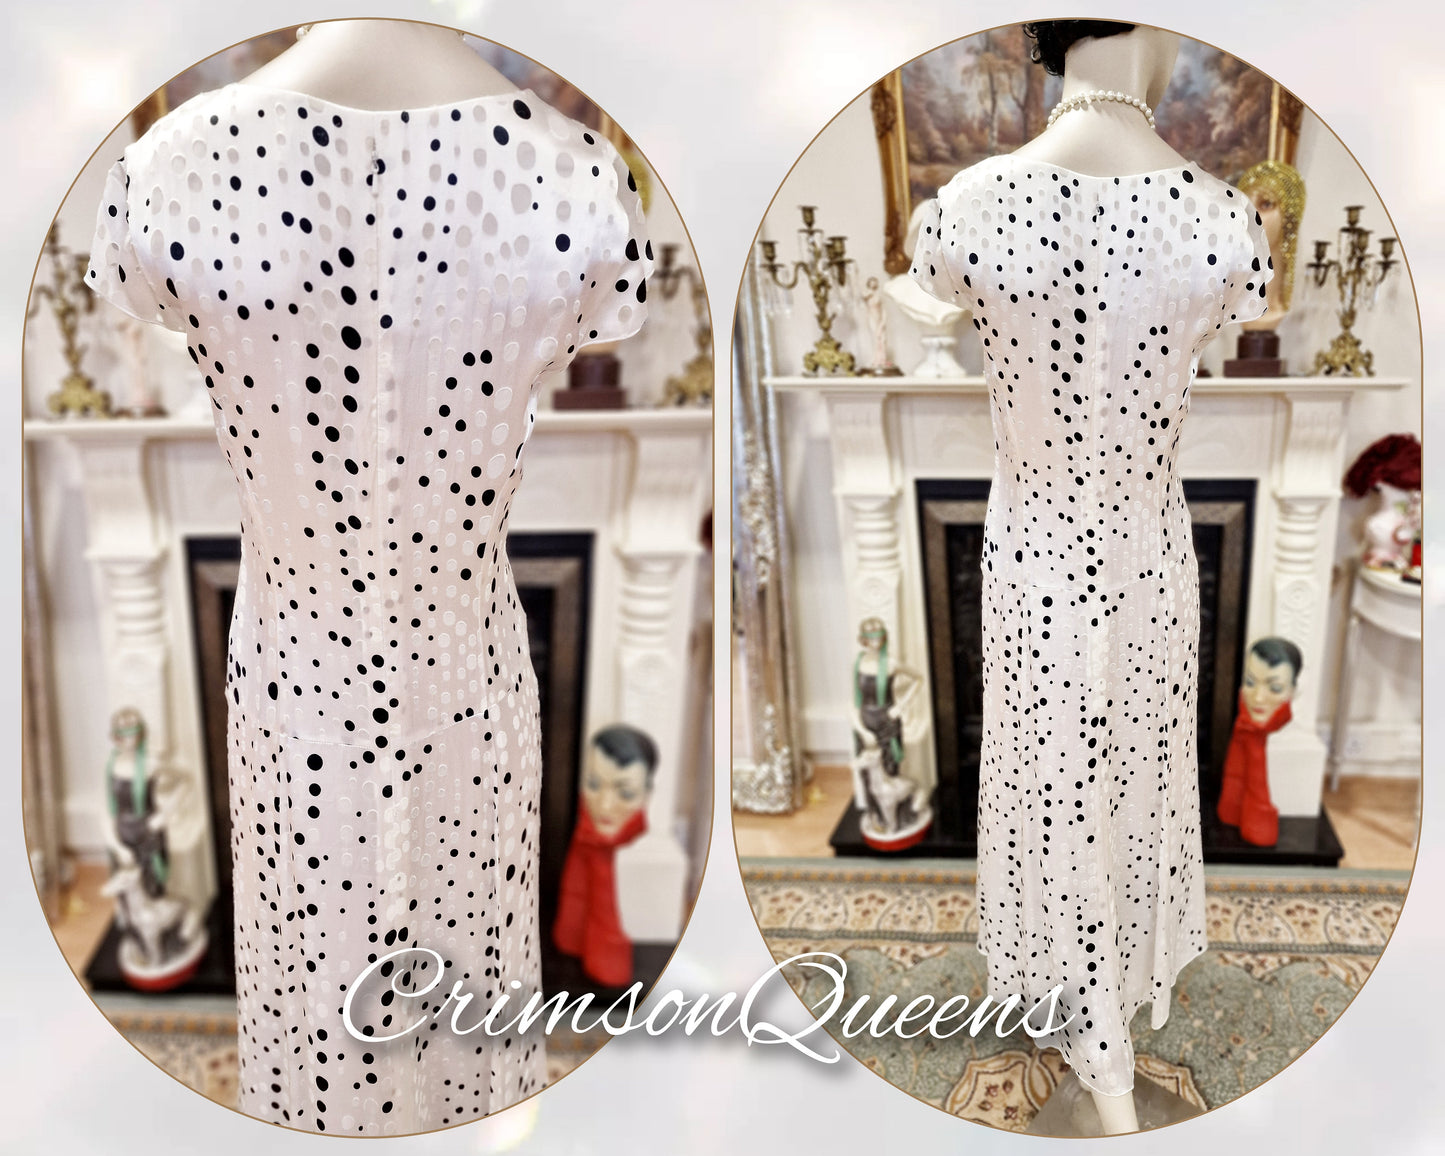 1930s  Vintage Downton Abbey dress Avant Garde 100% silk Devore bias cut  polka-dot spotty black and white monochrome dress size UK 12  US 8